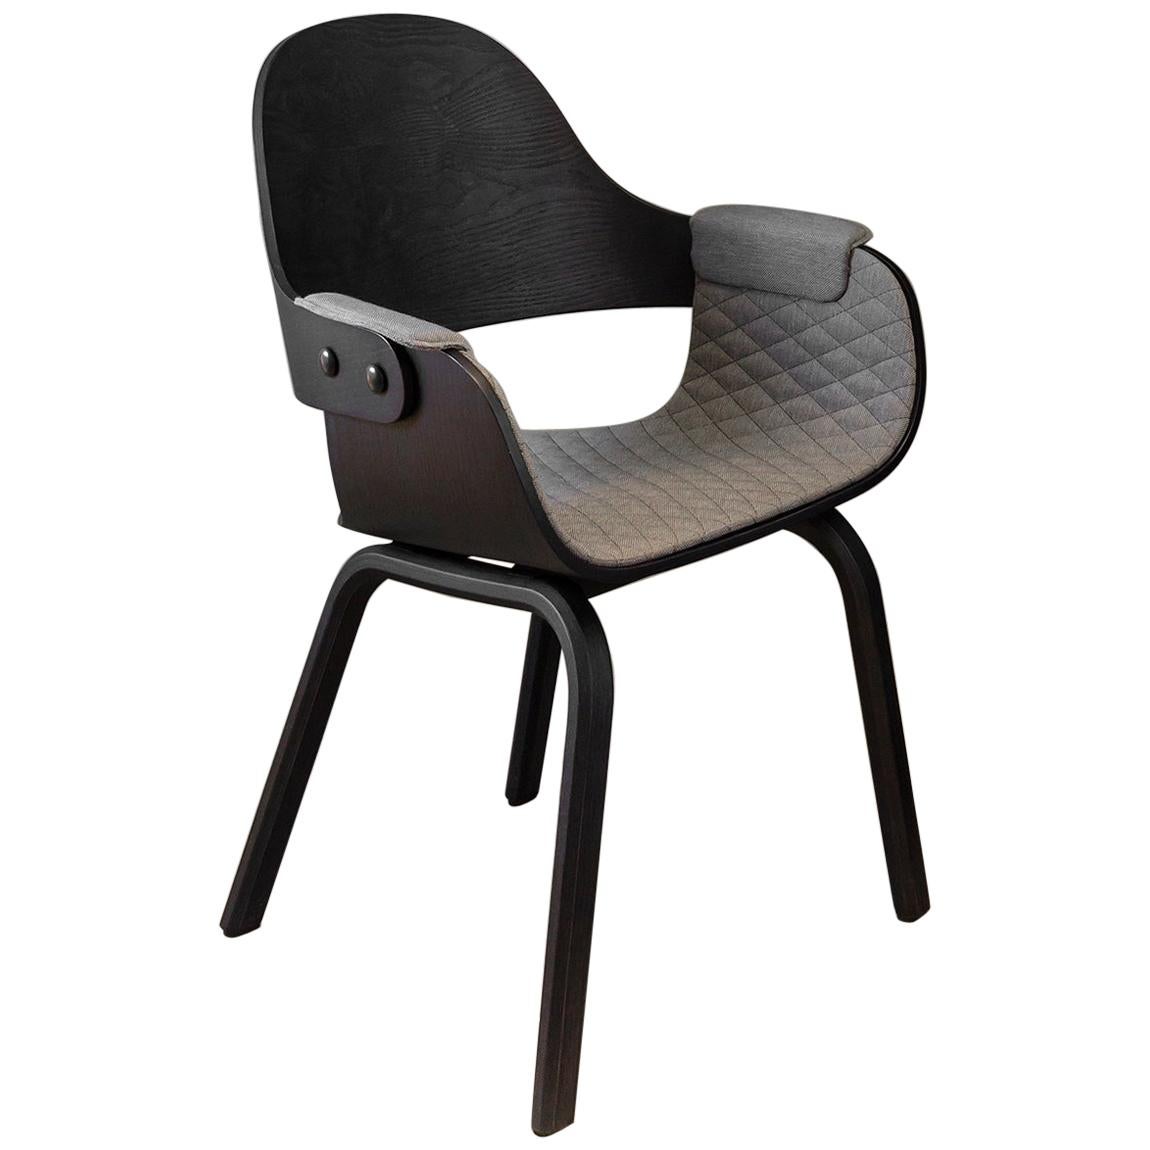 Chaise Showtime de Jaime Hayon chaise de bureau ou de salle à manger contemporaine teintée noire